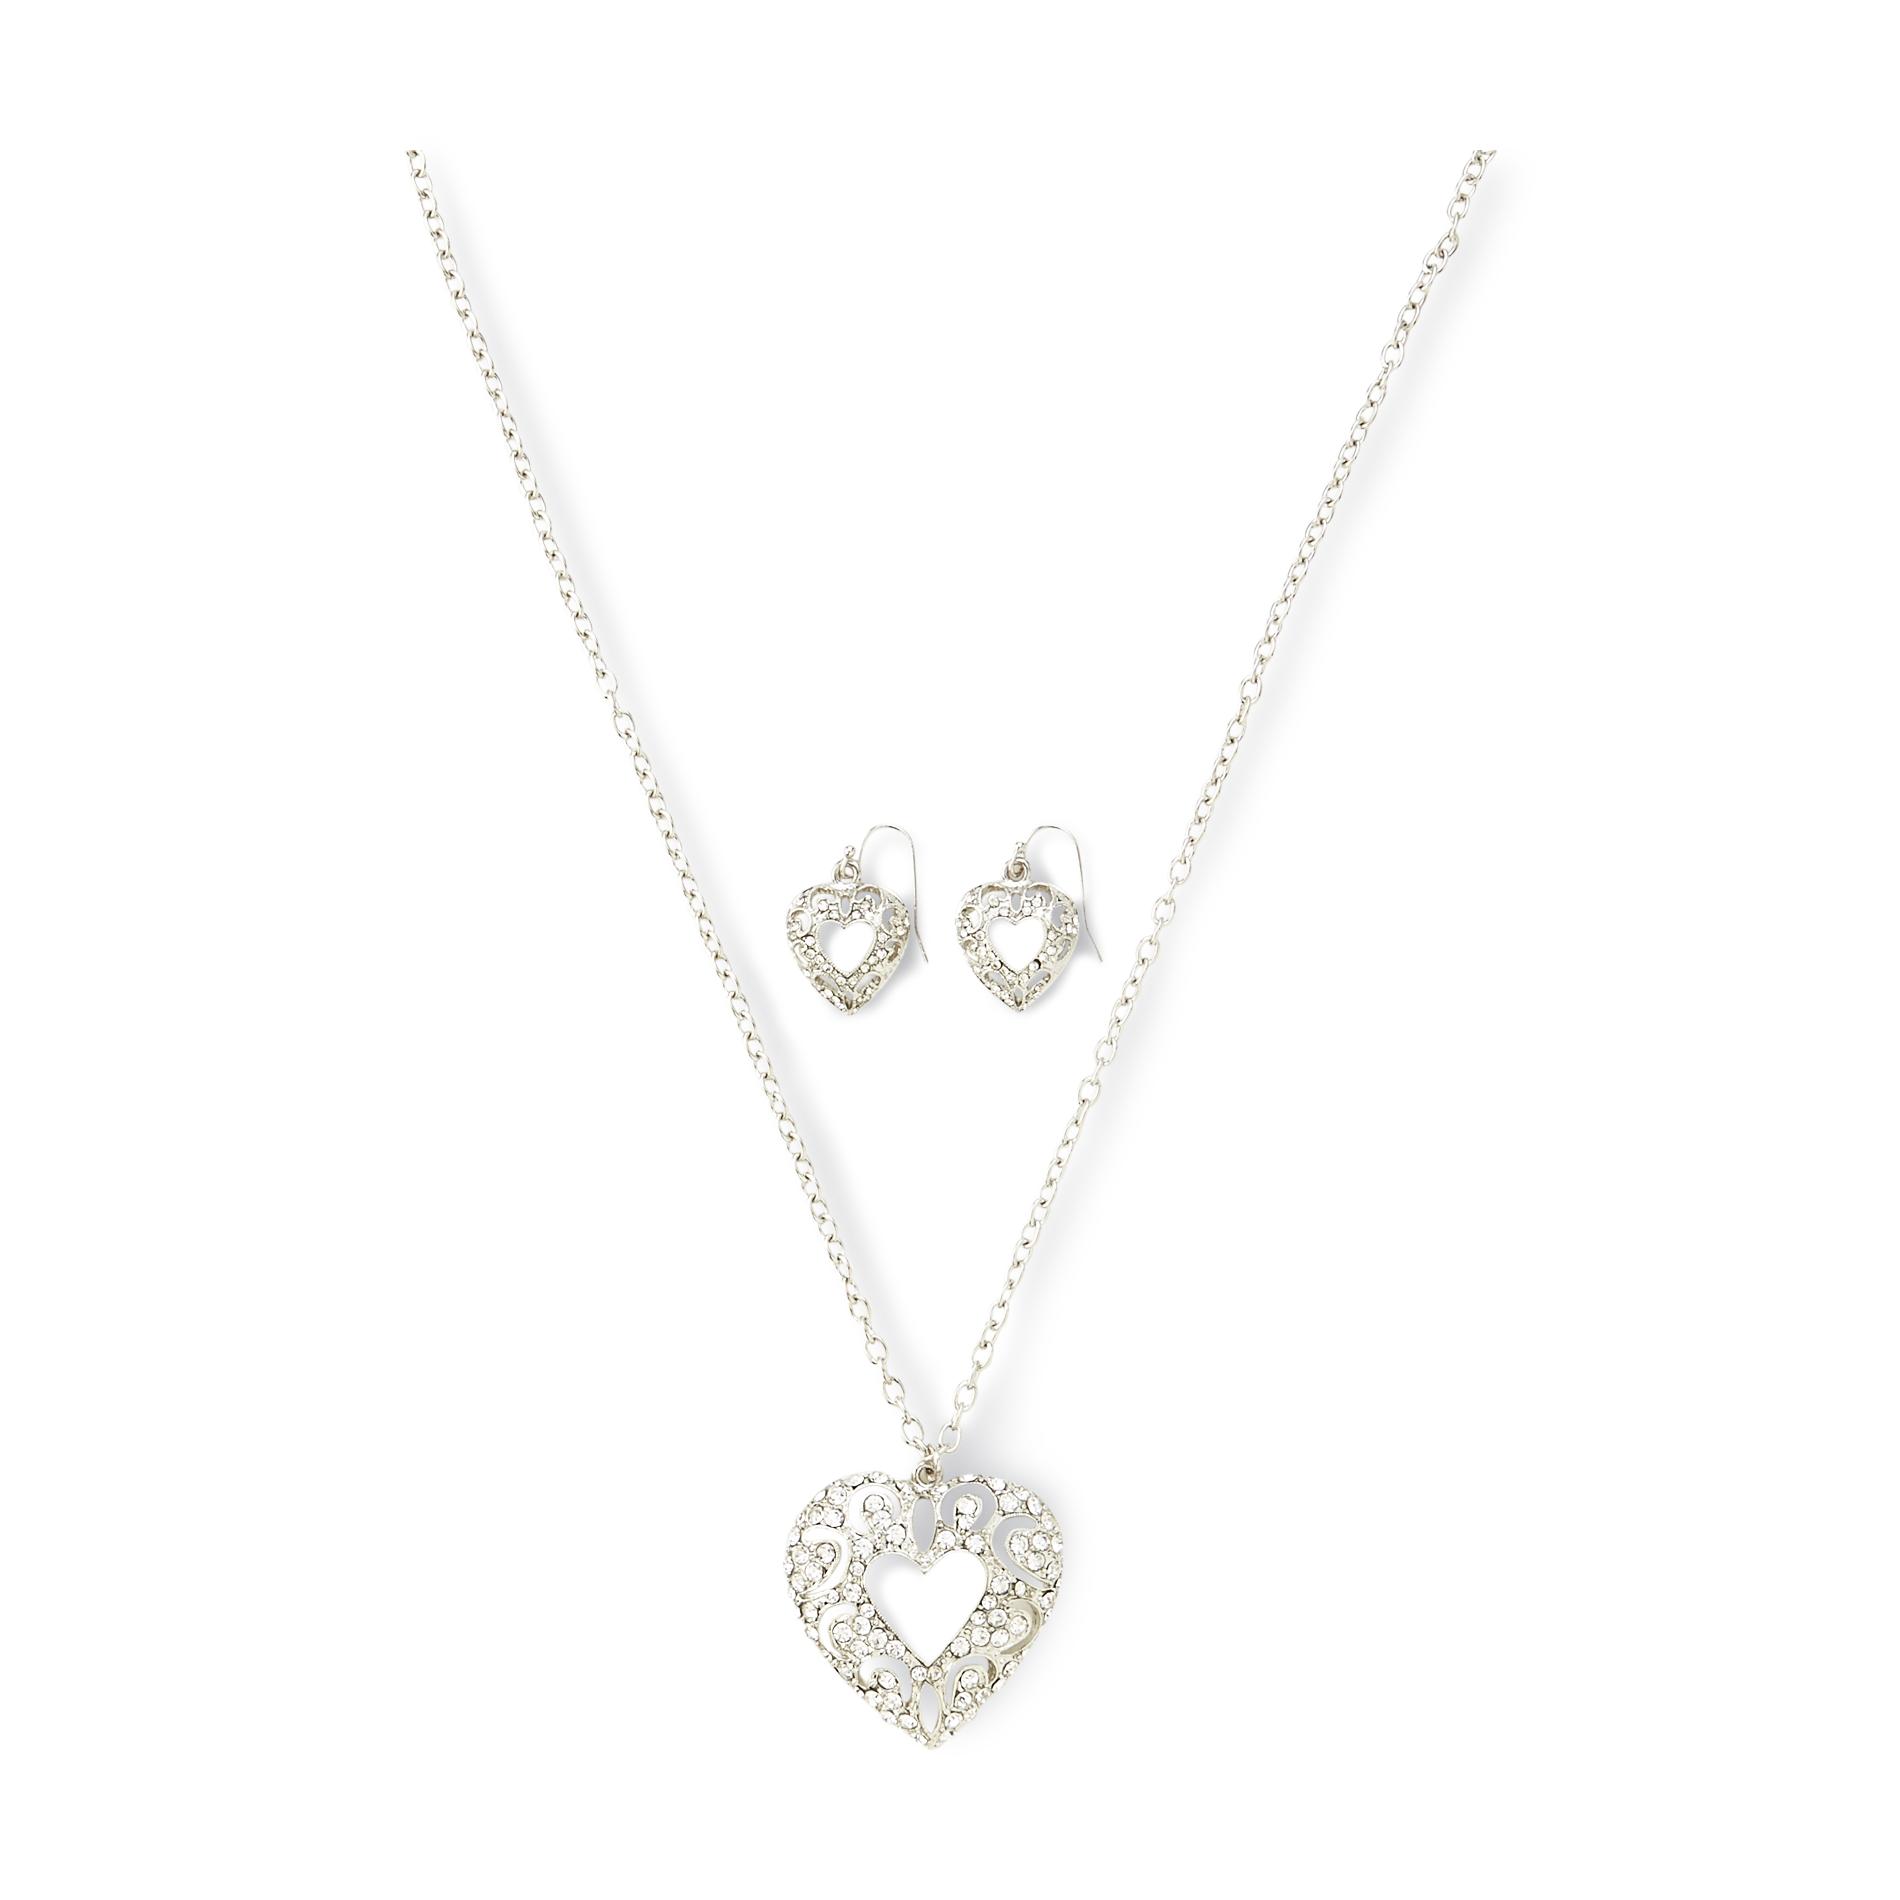 Jaclyn Smith Women's Rhinestone Heart Pendant Necklace & Earrings